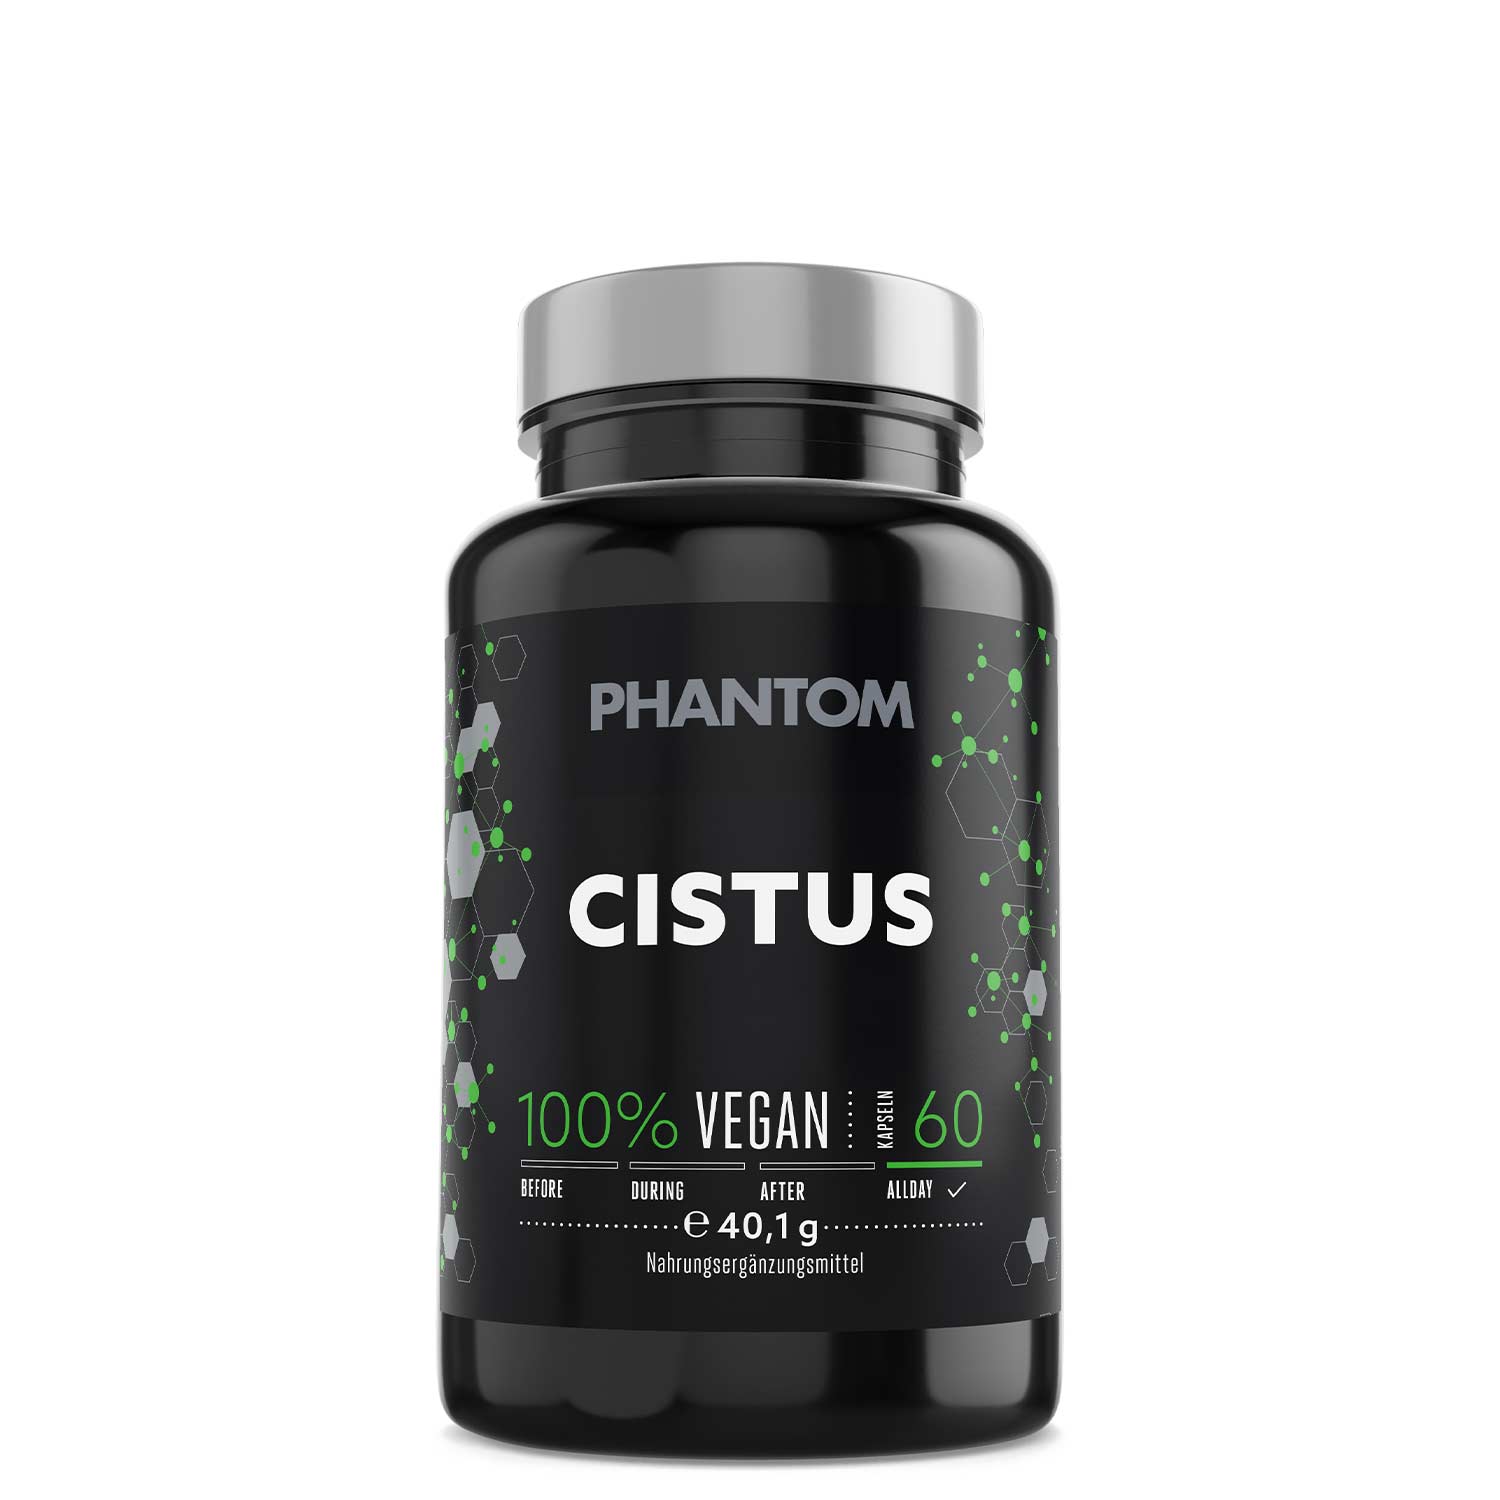 Phantom Vitamin C Supplement für ein starkes Immunsystem im Kampfsport.